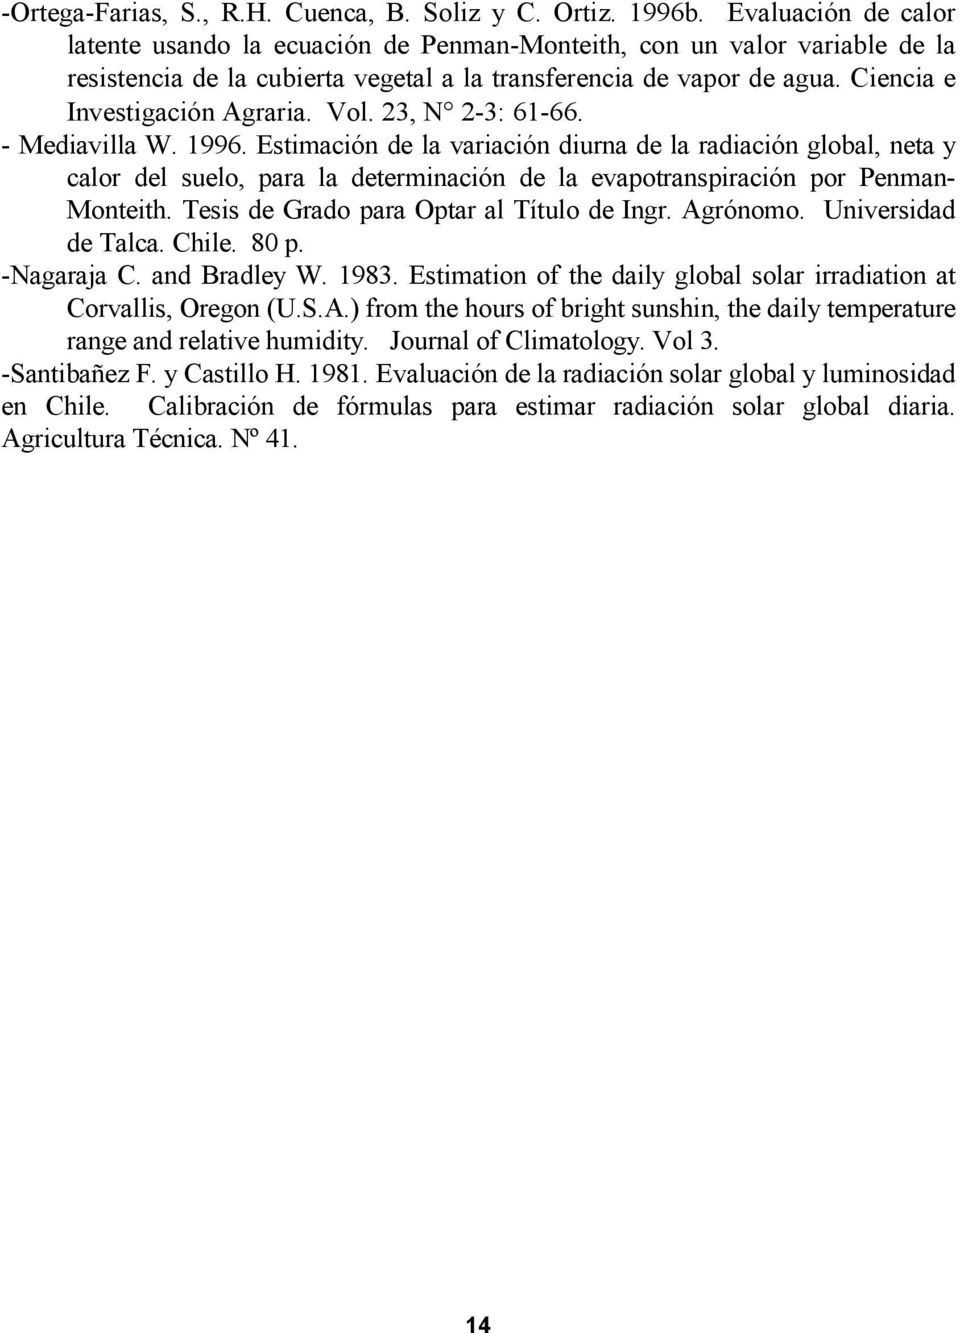 Vol. 23, N 2-3: 61-66. - Mediavilla W. 1996. Estimación de la variación diurna de la radiación global, neta y calor del suelo, para la determinación de la evapotranspiración por Penman- Monteith.